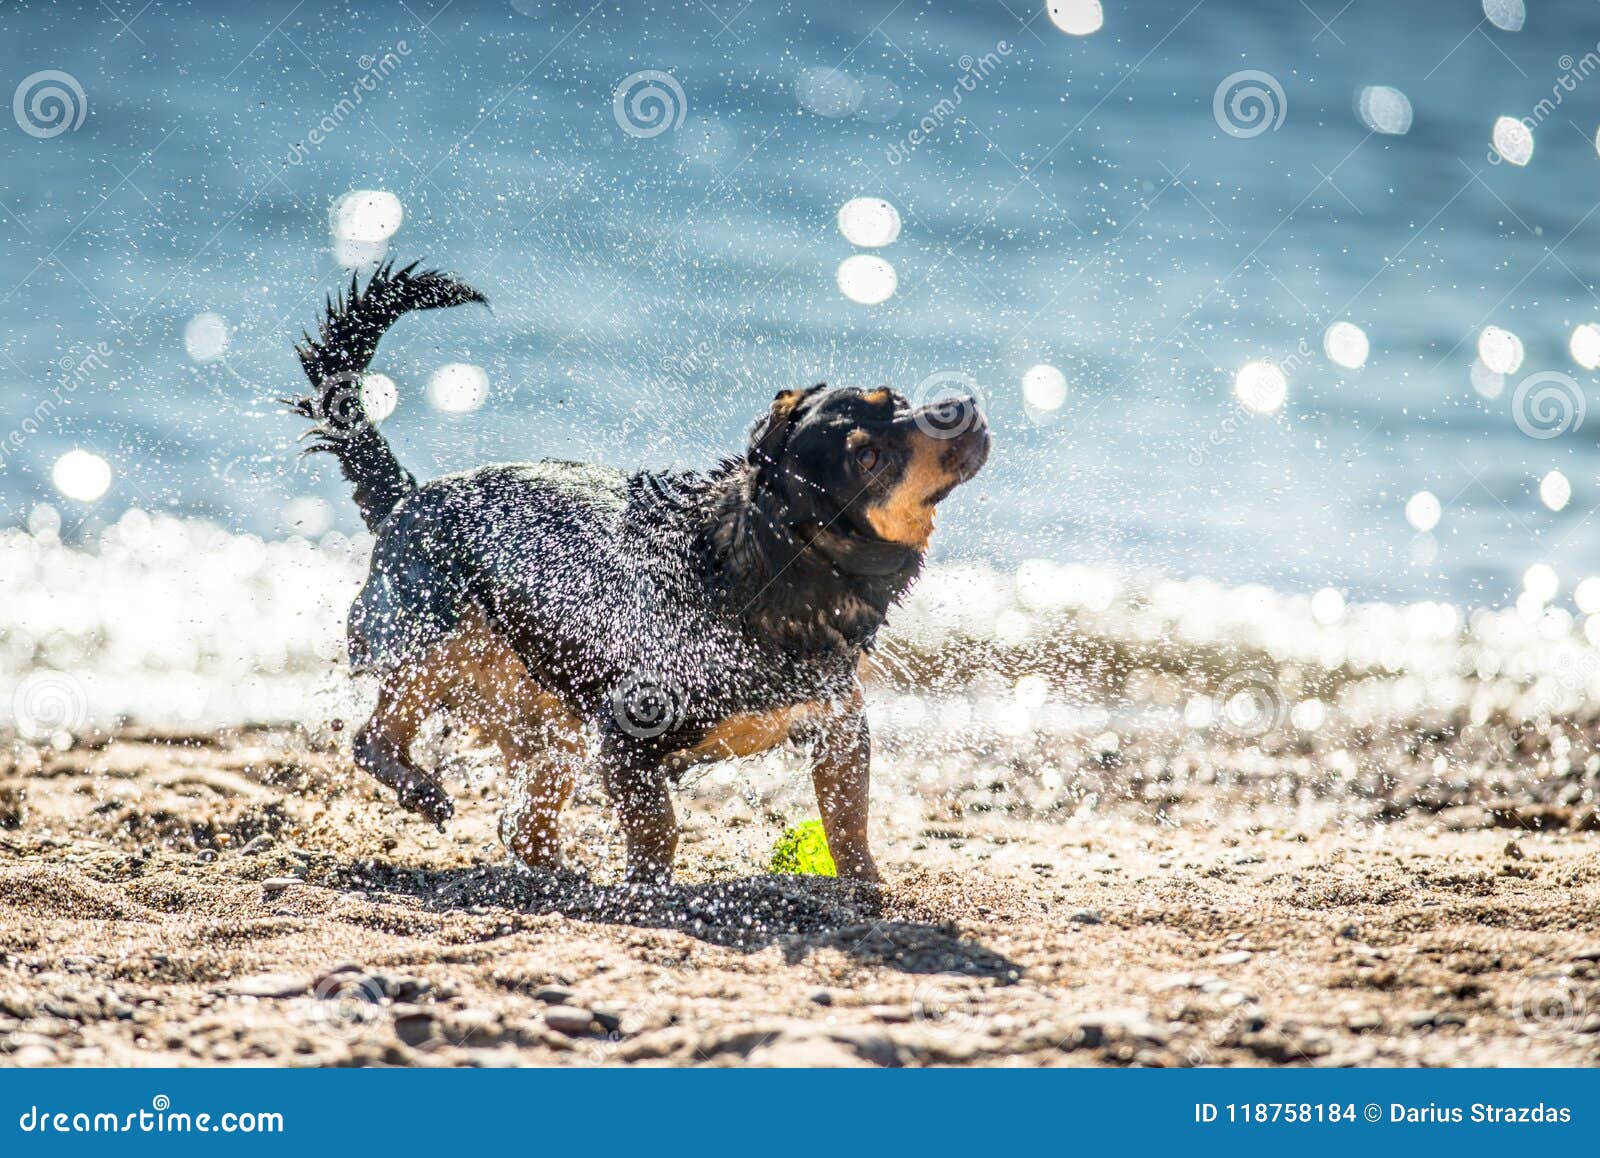 湿狗震动. 震动水的湿狗可看见外套和的水滴 蓝色海背景